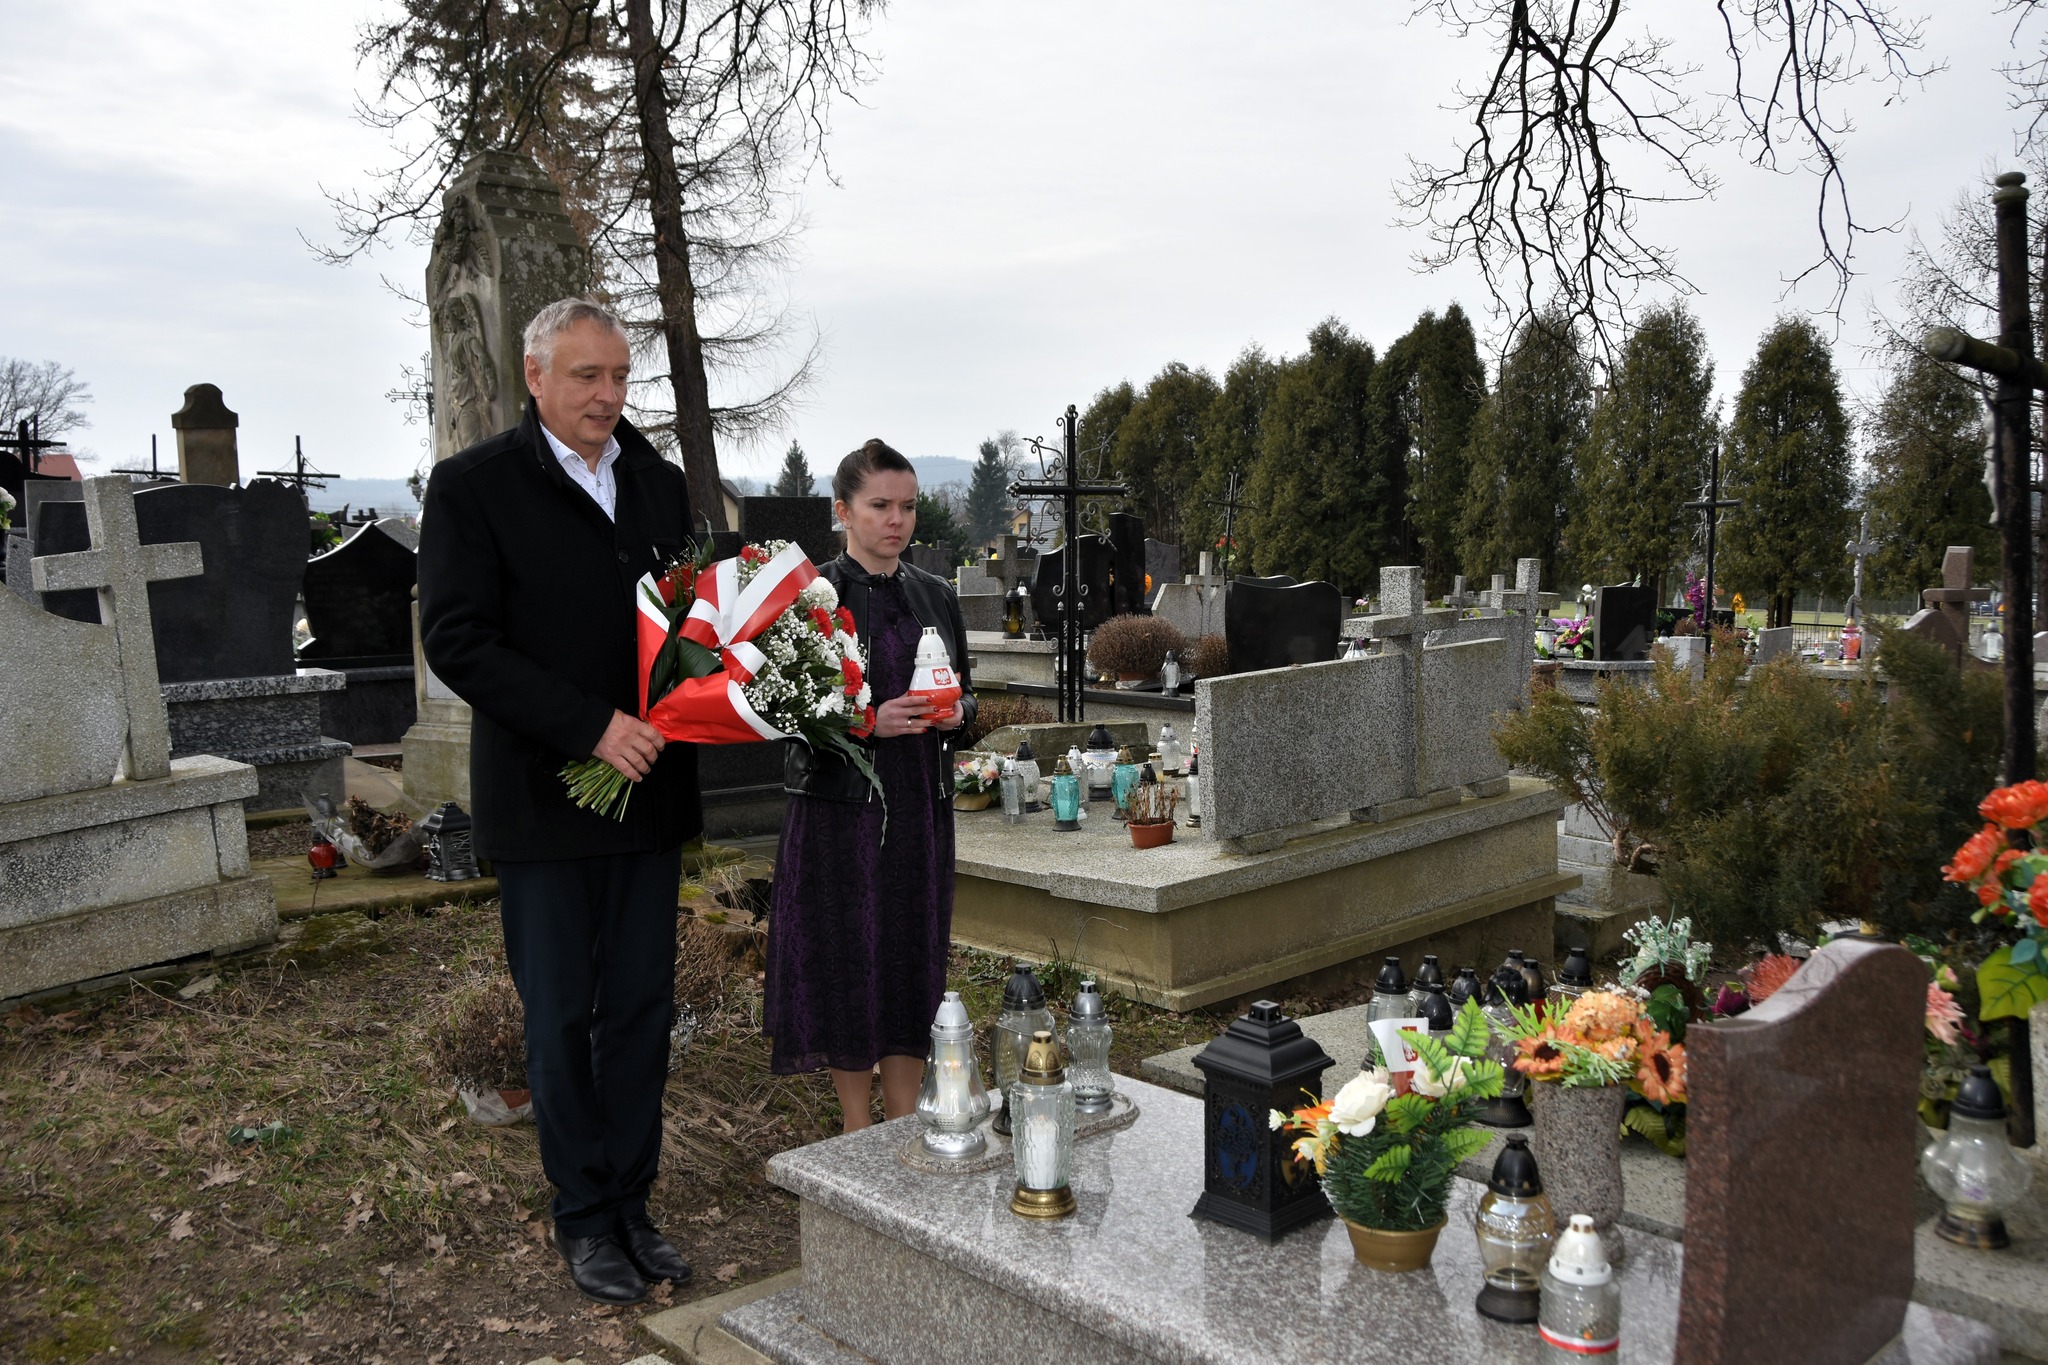 Starszy mężczyzna w garniturze i młoda kobieta stoją przy grobie na cmentarzu. Mężczyzna trzyma w rękach wiązankę kwiatów, zaś kobieta znicz.